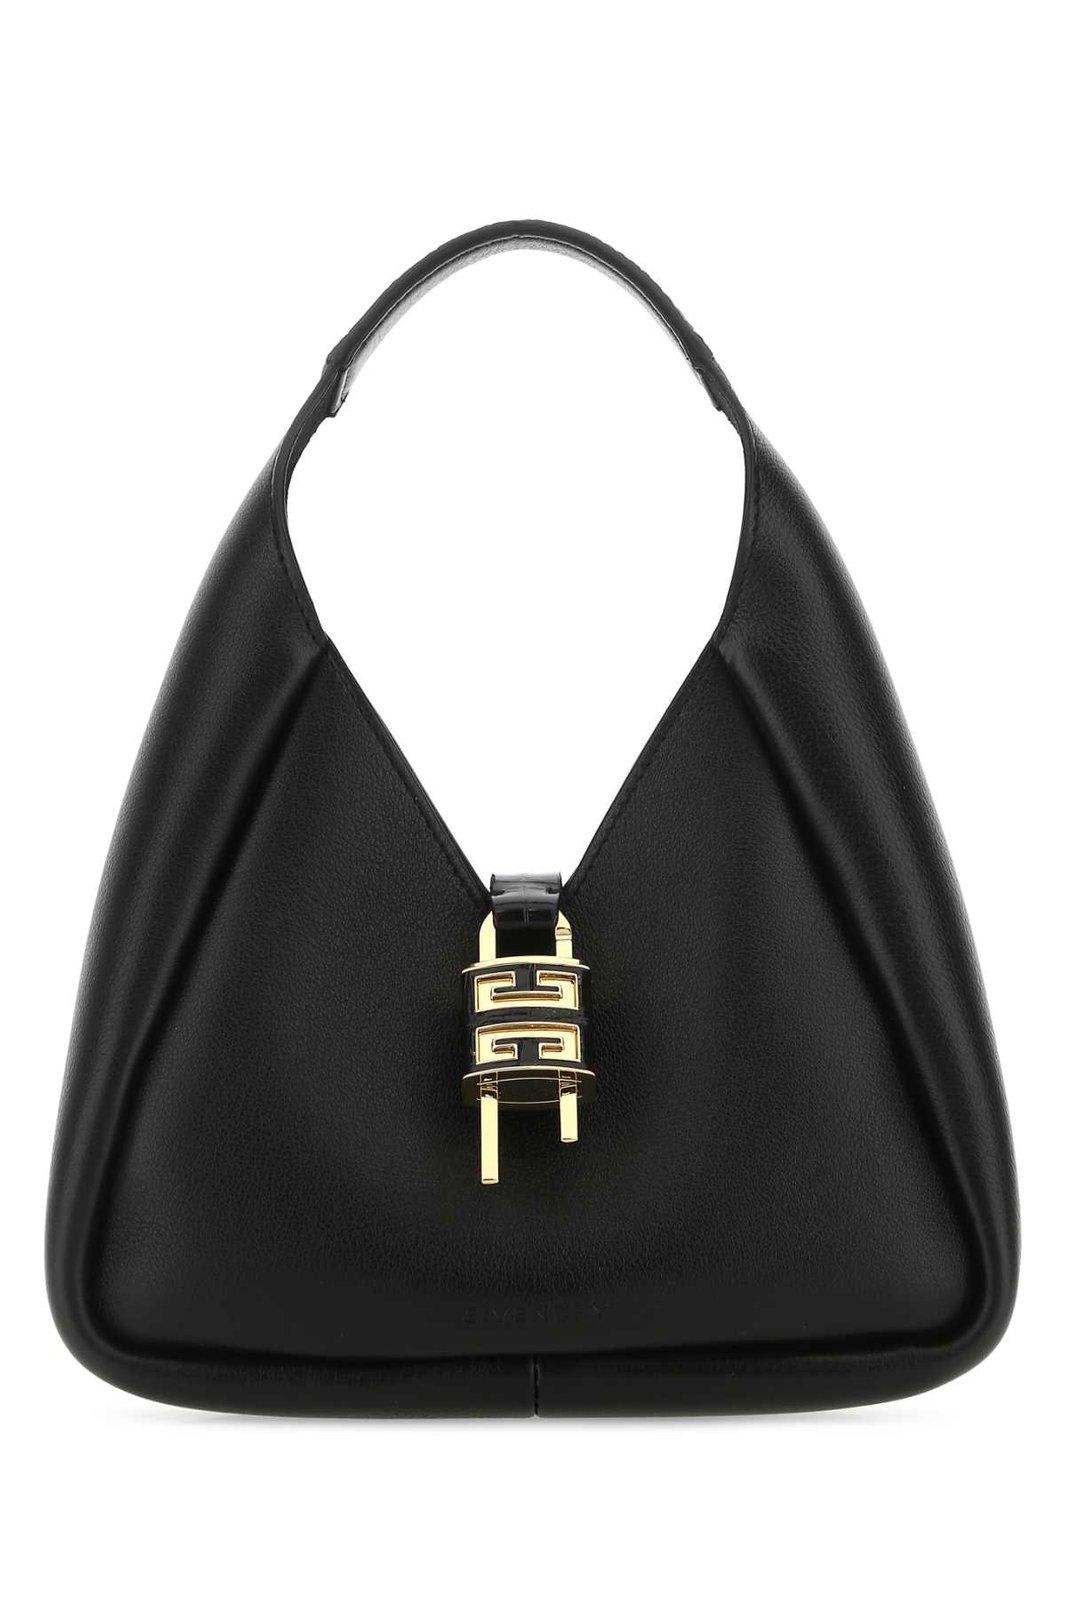 Givenchy Mini G-hobo Bag